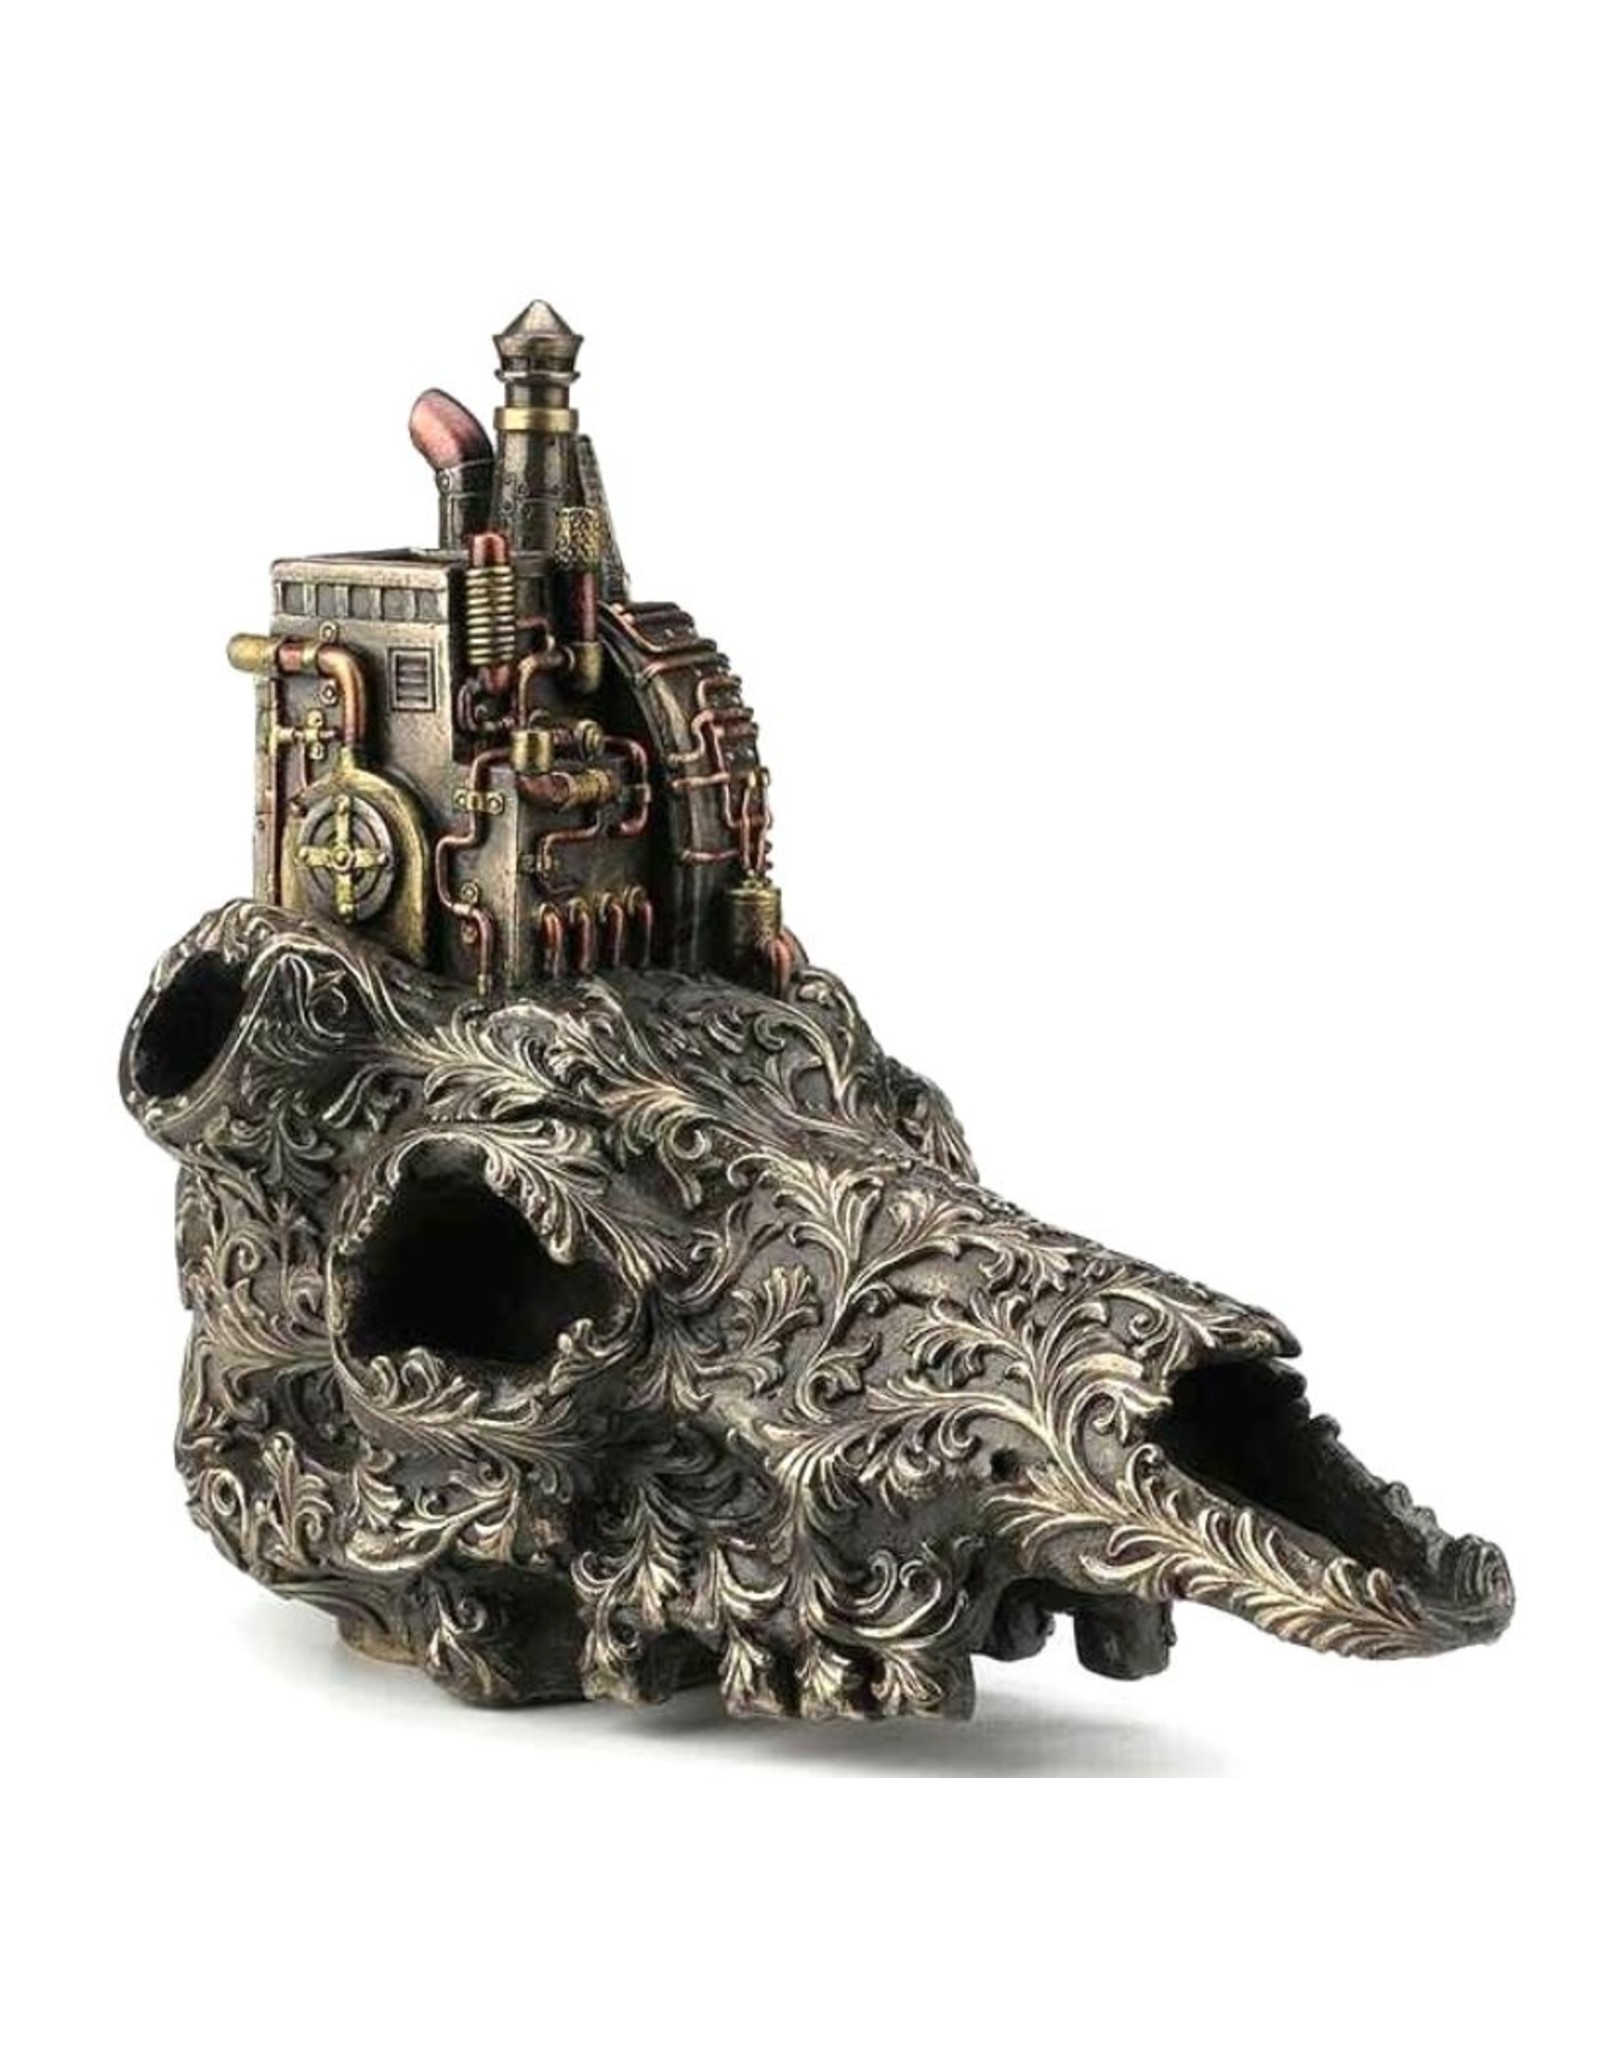 Veronese Design Giftware & Lifestyle - Steampunk Machinarium Bull Skull bronzed figurine